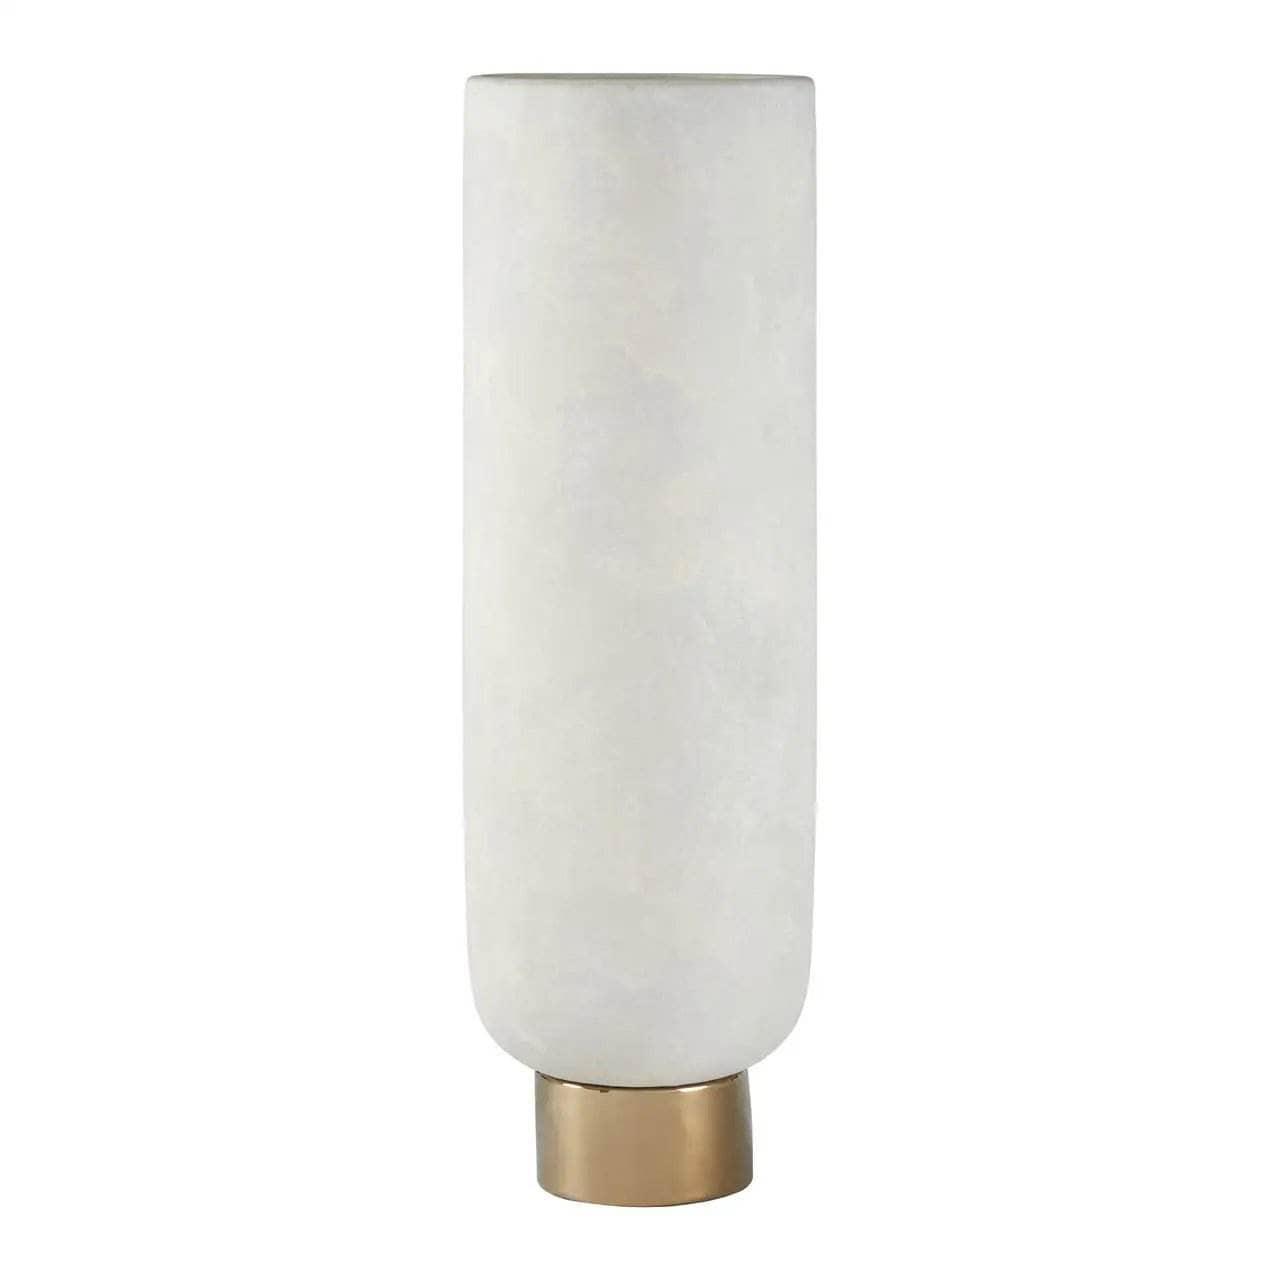  -  Callie Large Pedestal Vase  -  60003512